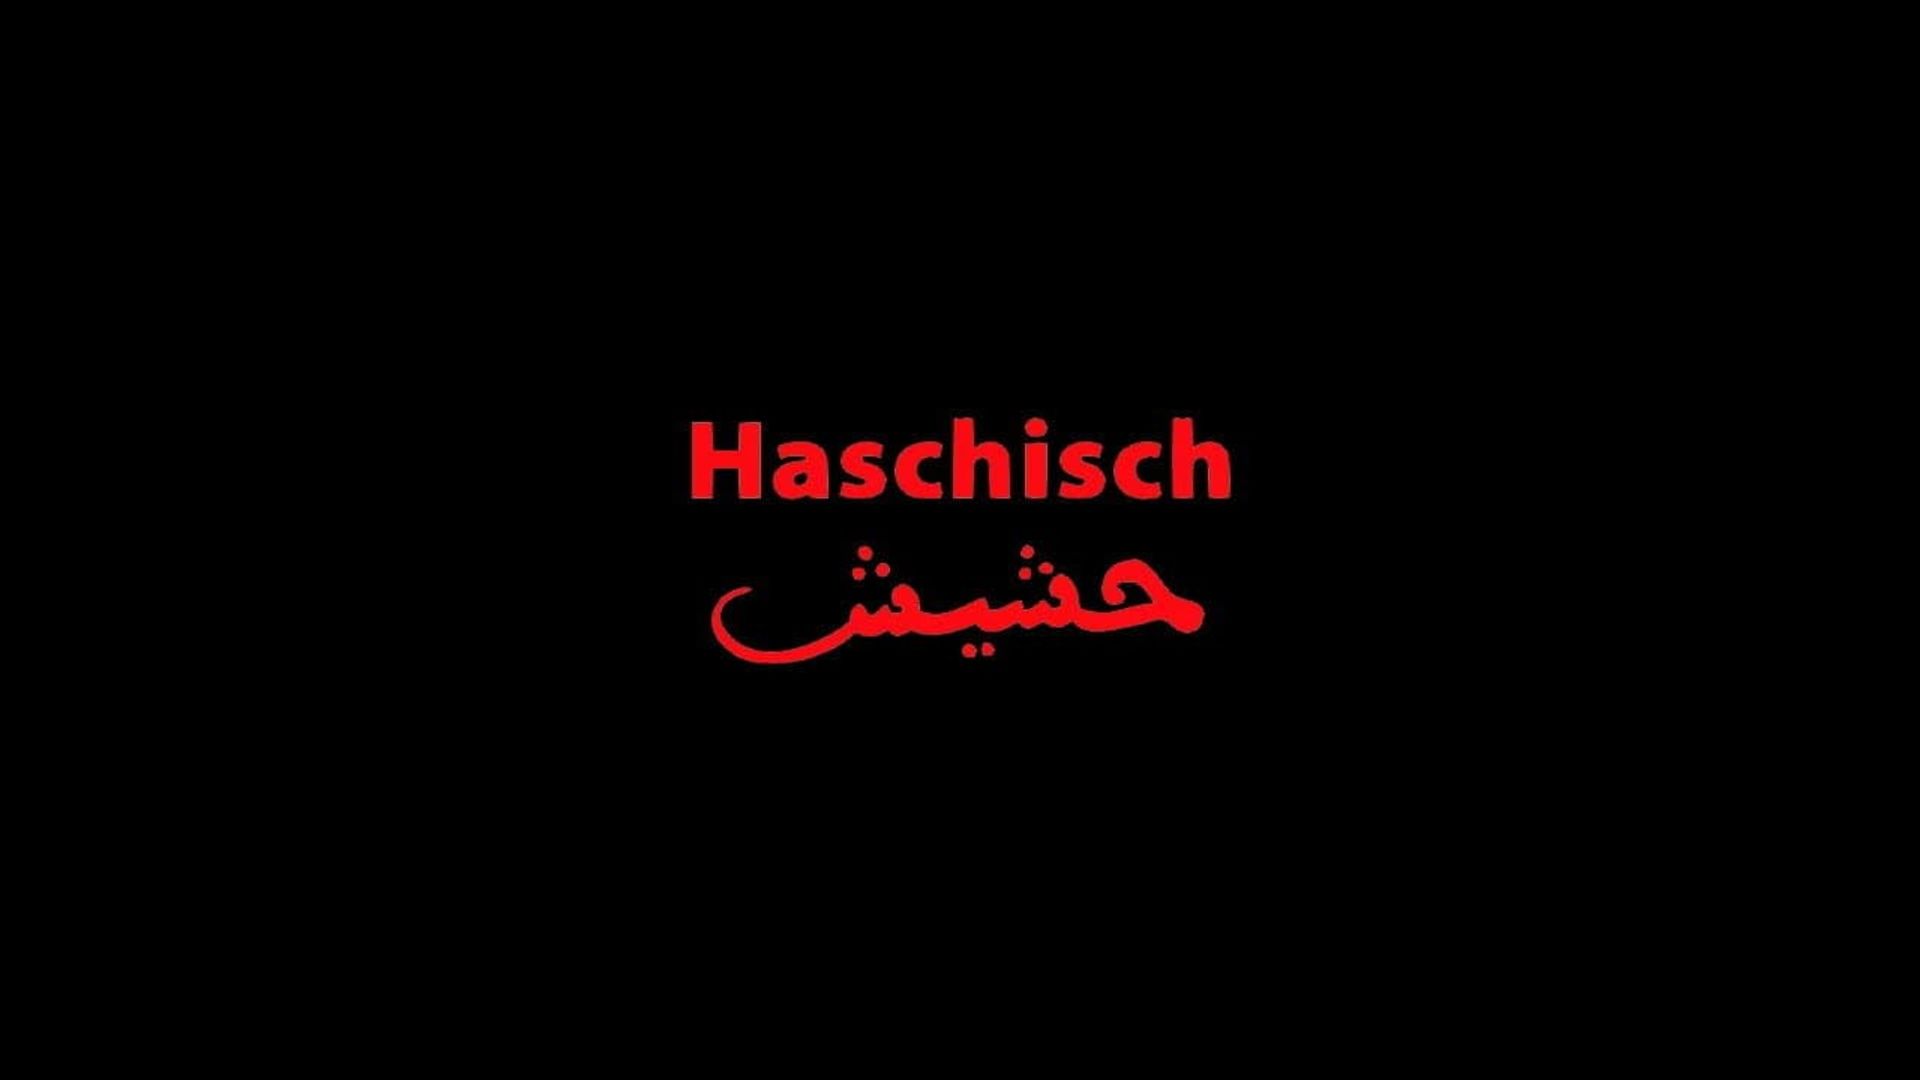 Haschisch background